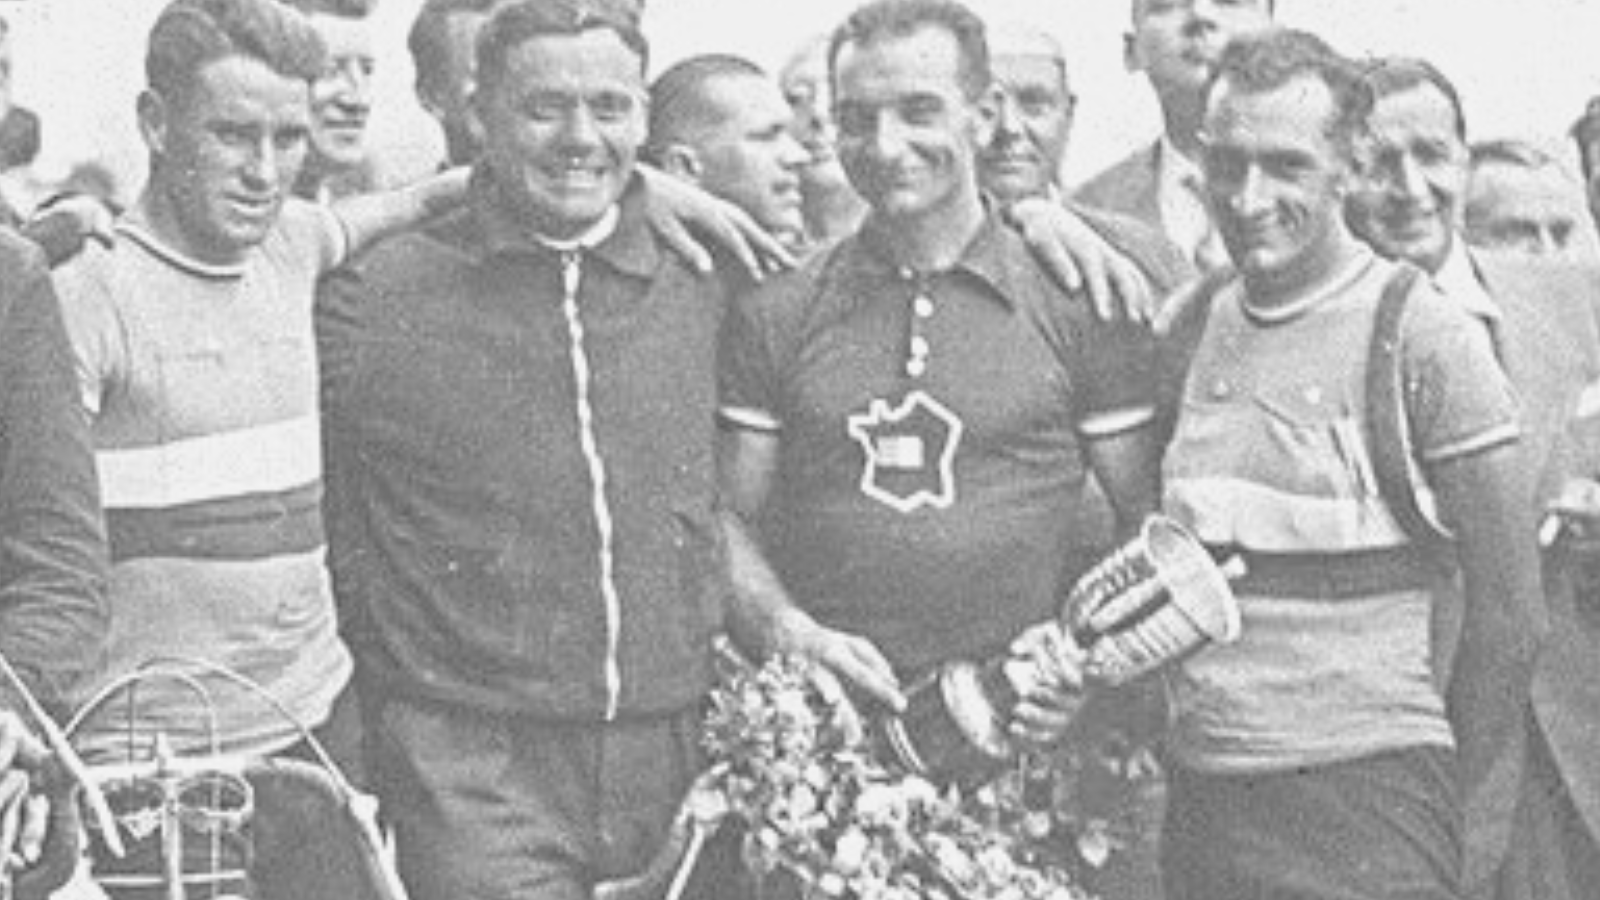 Roger Lapêbie, winner of the Tour de France 1937